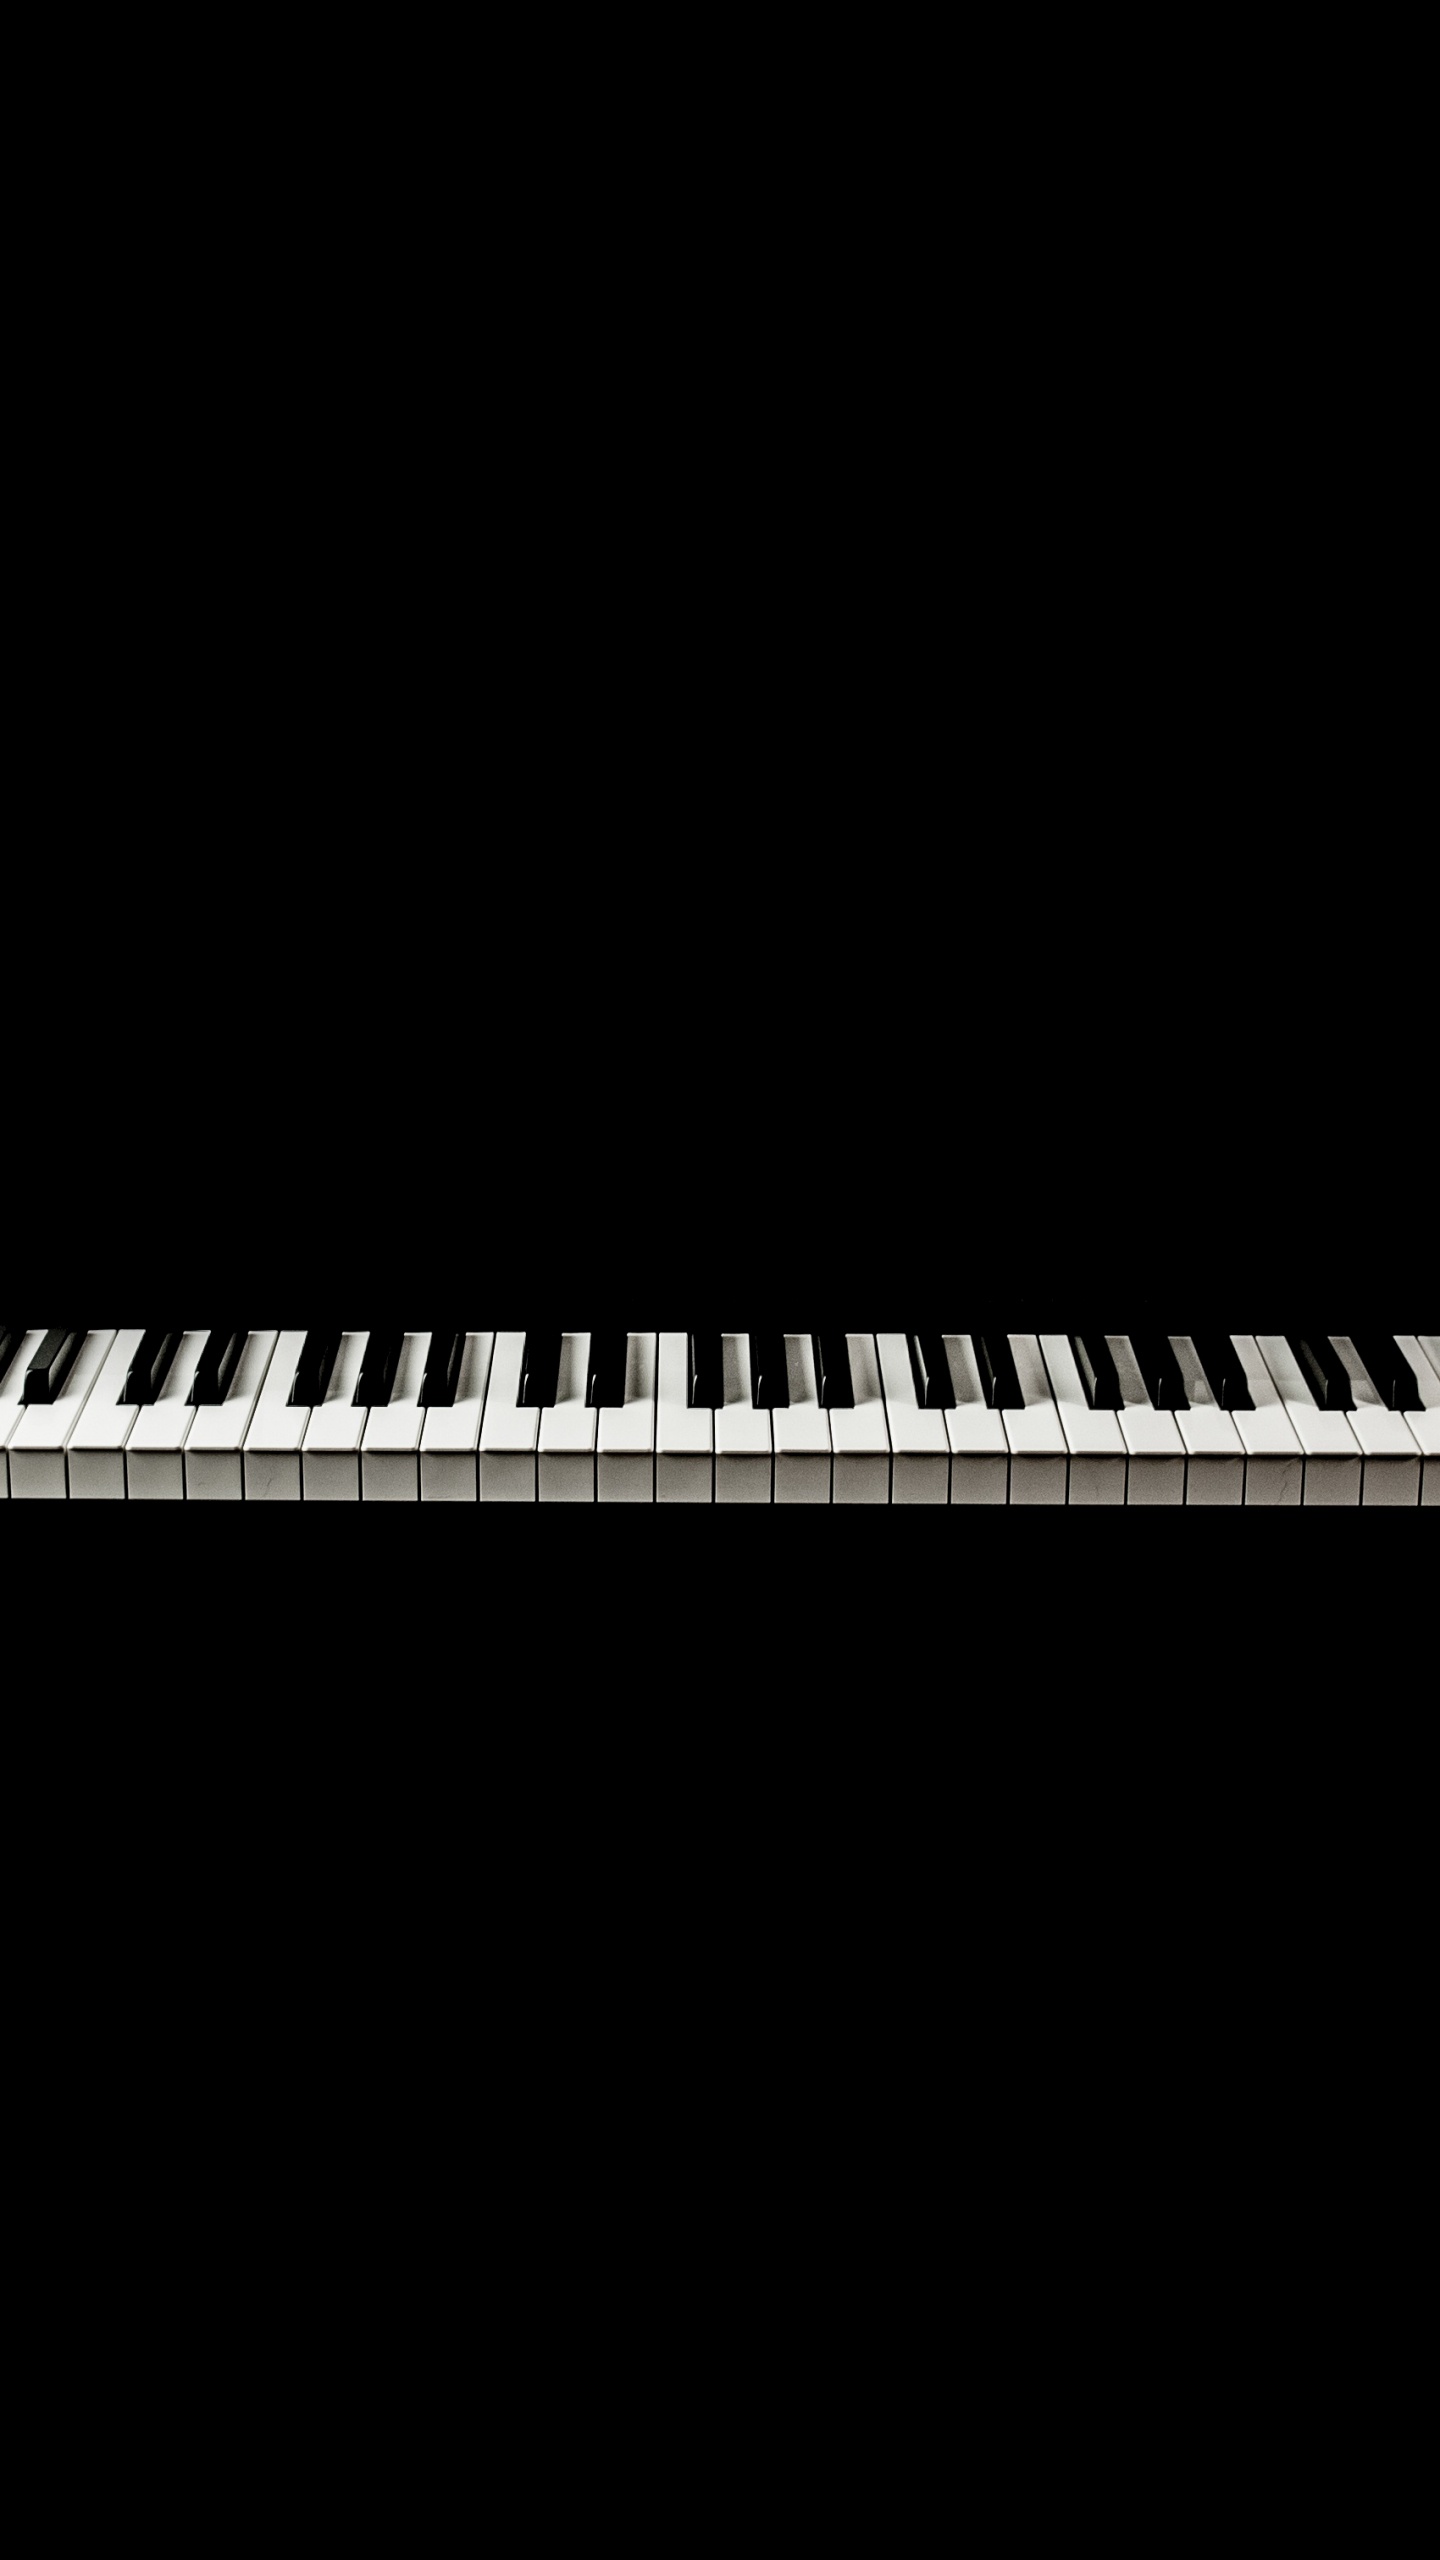 Teclado Musical, Piano Digital, Piano Eléctrico, Piano, Teclado. Wallpaper in 1440x2560 Resolution